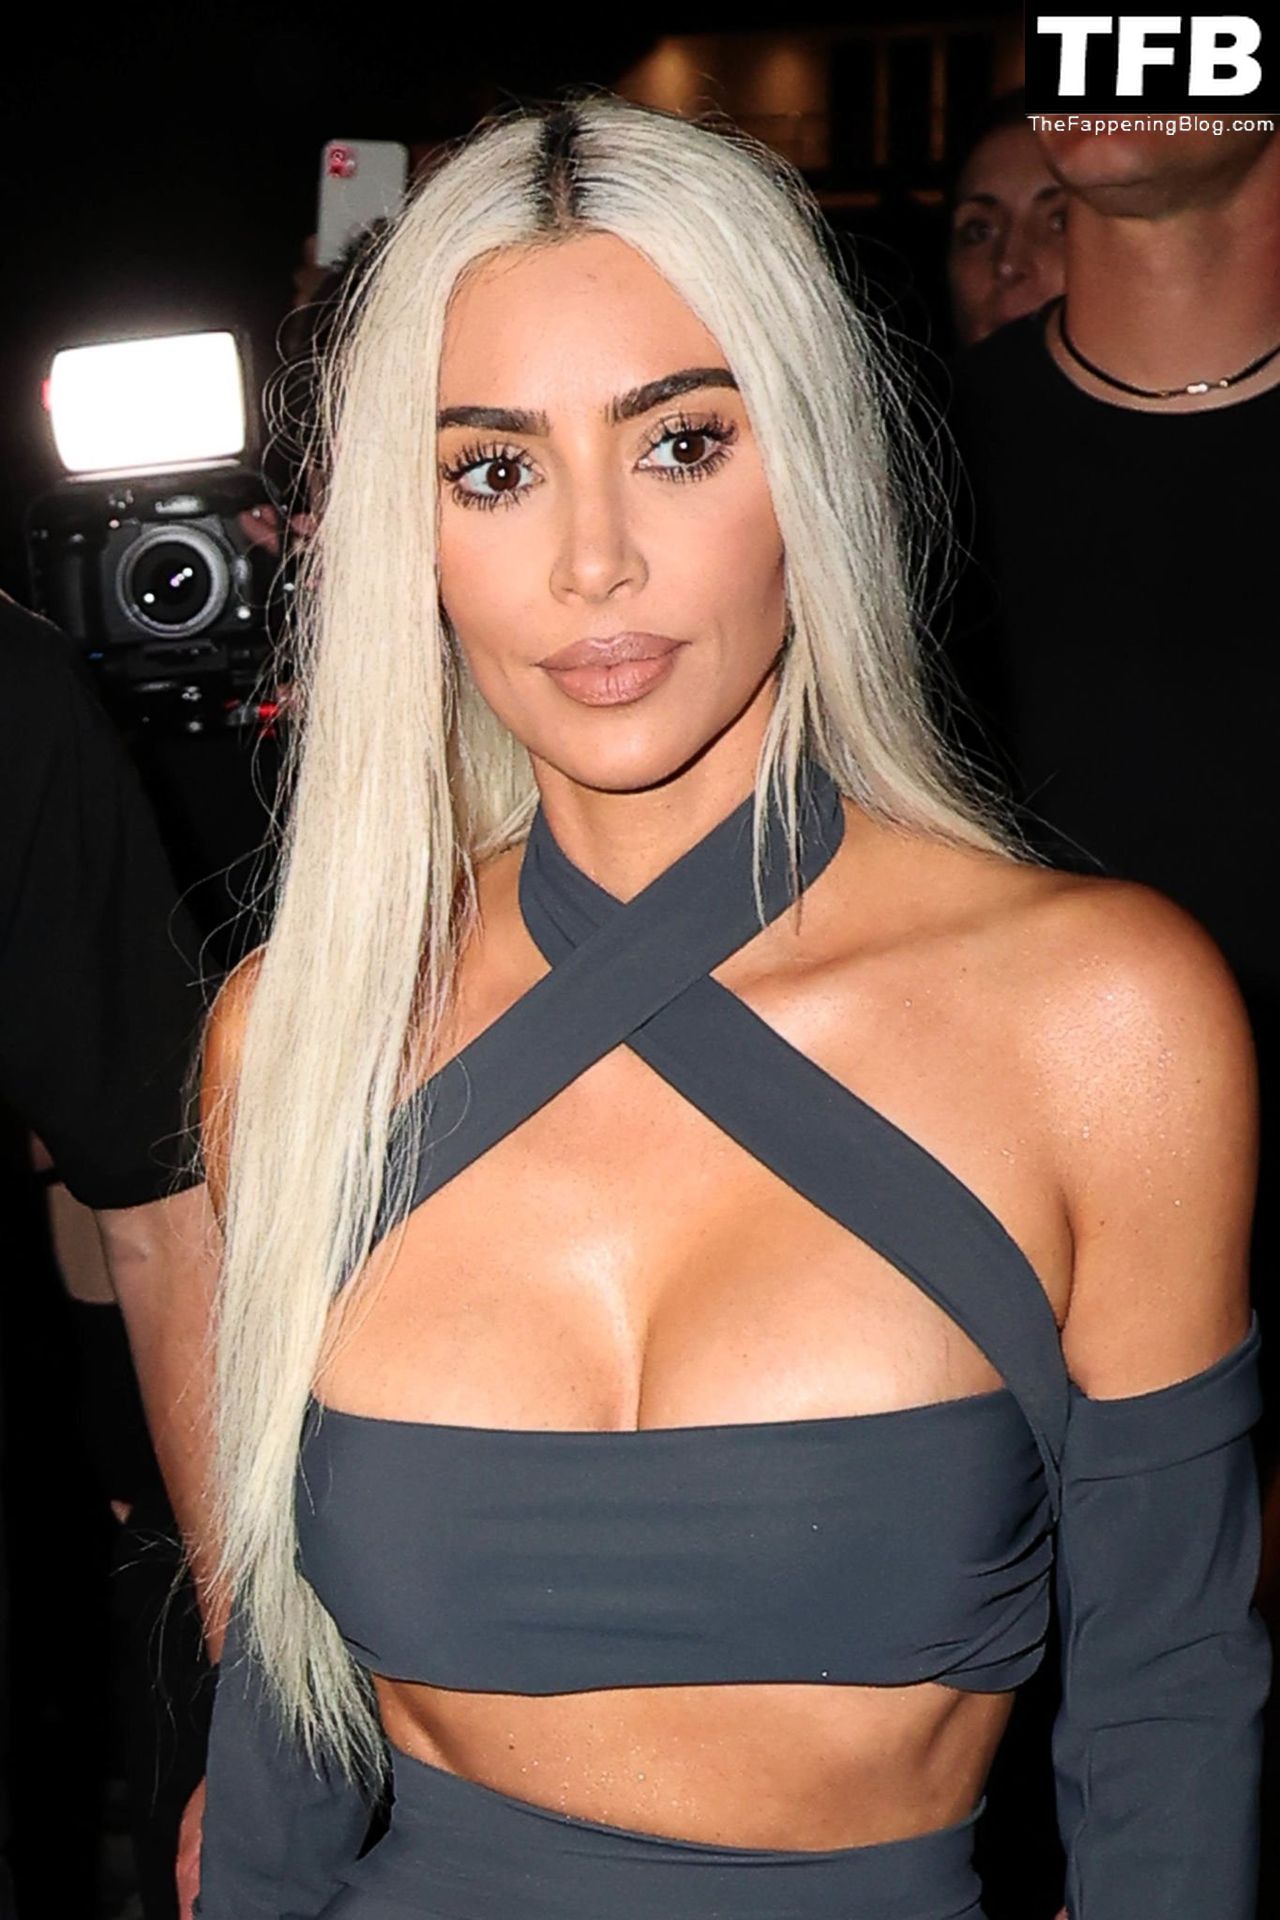 Kim-Kardashian-Sexy-The-Fappening-Blog-12-1.jpg